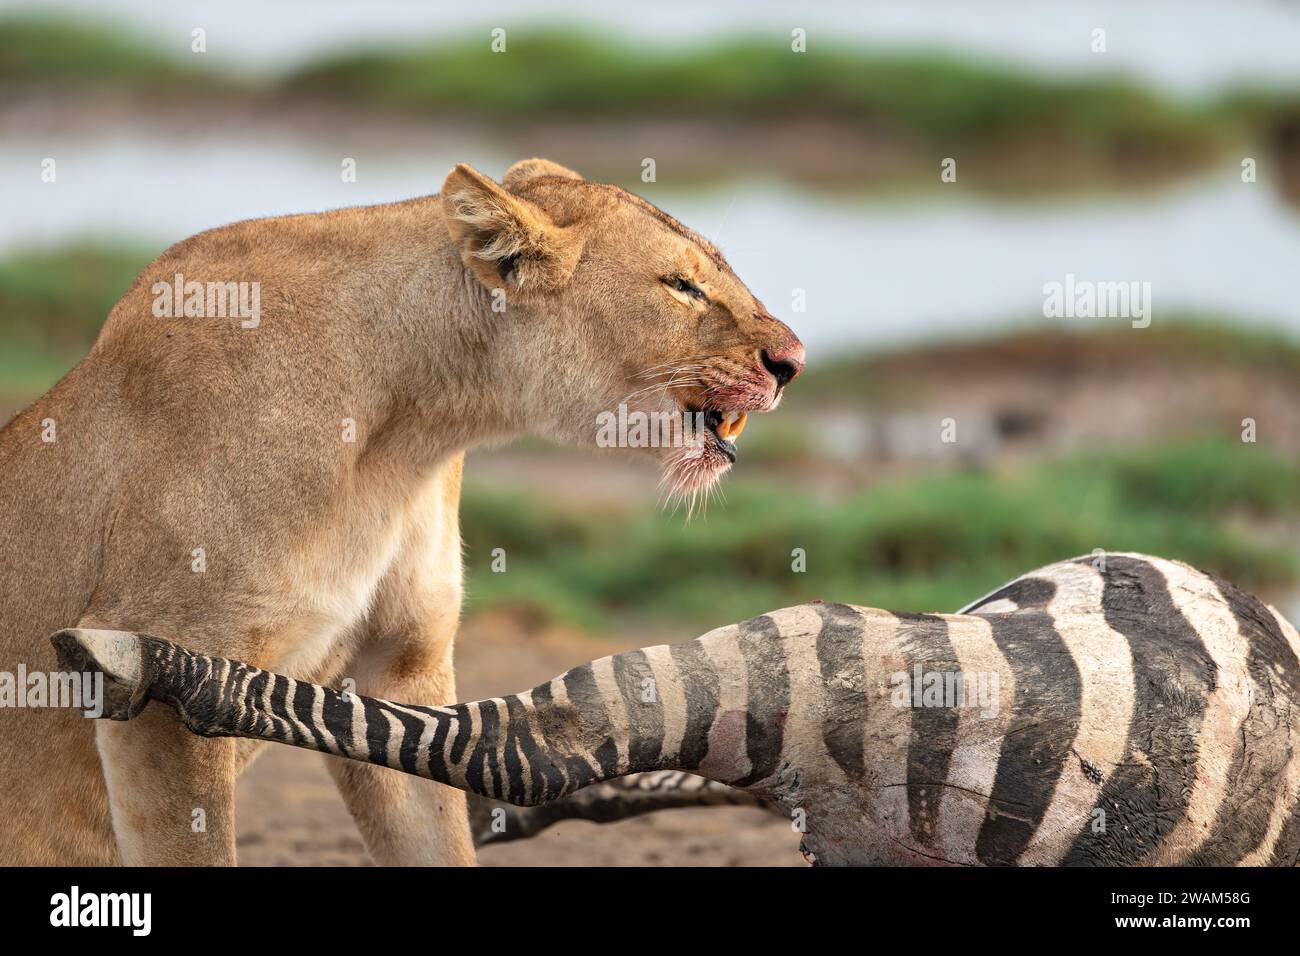 Vue de côté du visage sanglant d'une lionne se nourrissant d'une tuerie de zèbre fraîche au parc national du Serengeti, en Tanzanie Banque D'Images